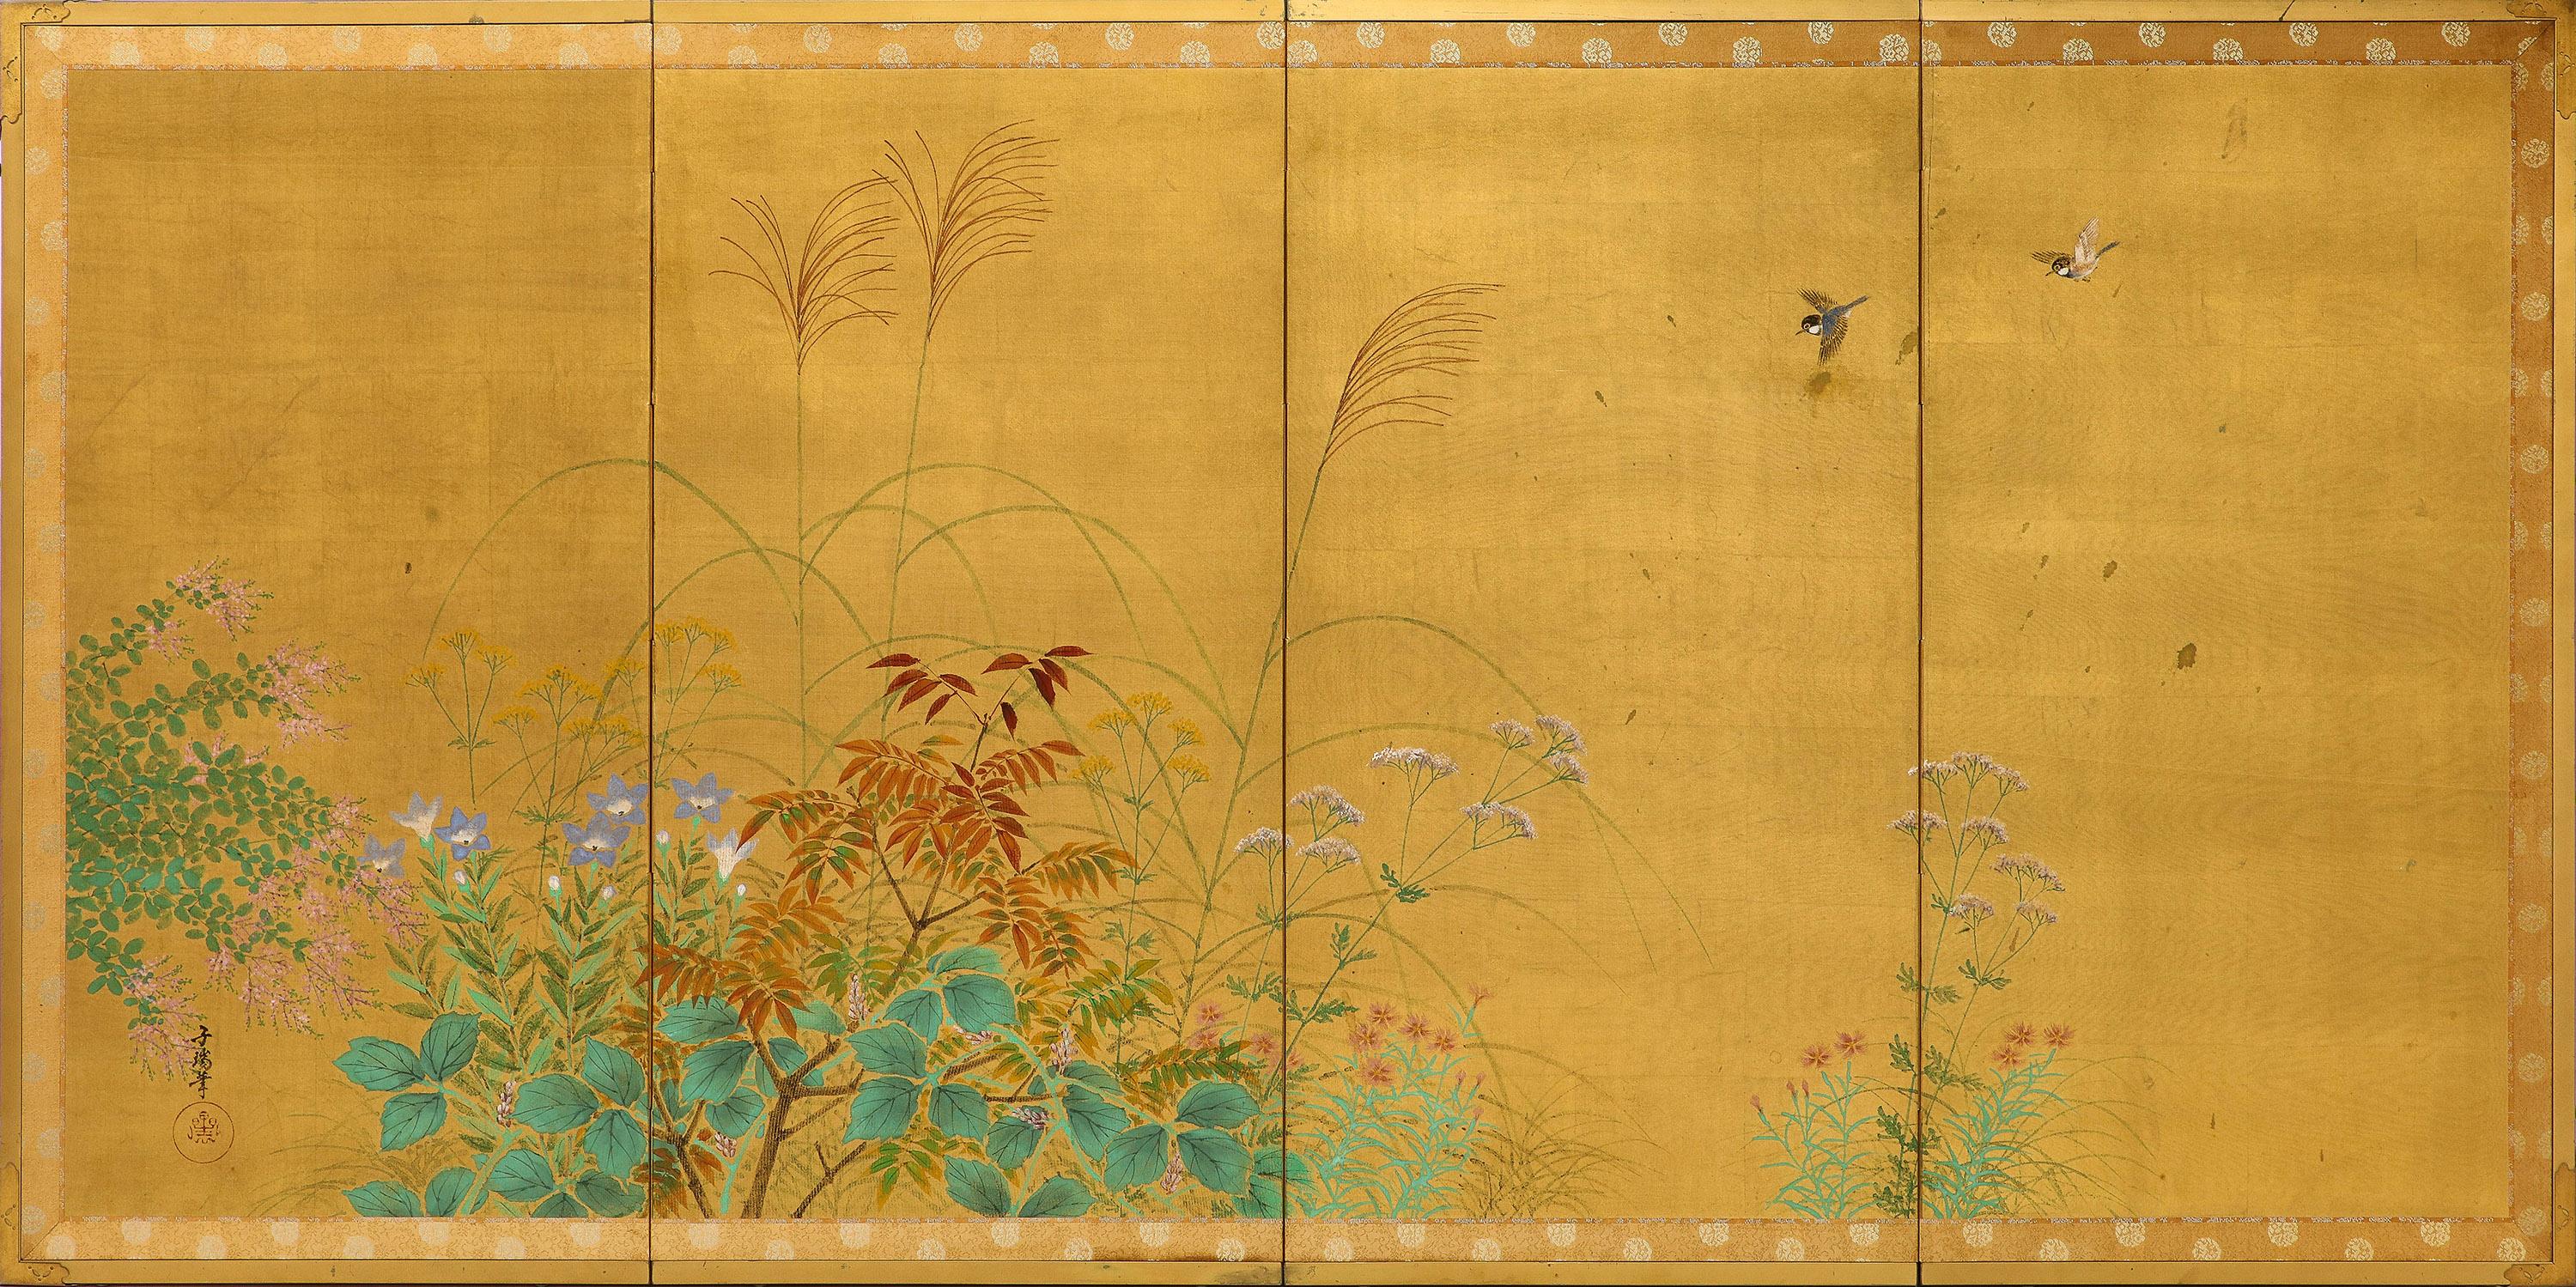 Japanische Leinwand aus der Showa-Zeit mit Gouache und Blattgold. Die 4 Tafeln haben einen originalen Messingrahmen und zeigen eine Szene mit Laub und Vögeln.
Dieses fein ausgeführte Exemplar wurde auf eine Platte montiert, so dass es an die Wand